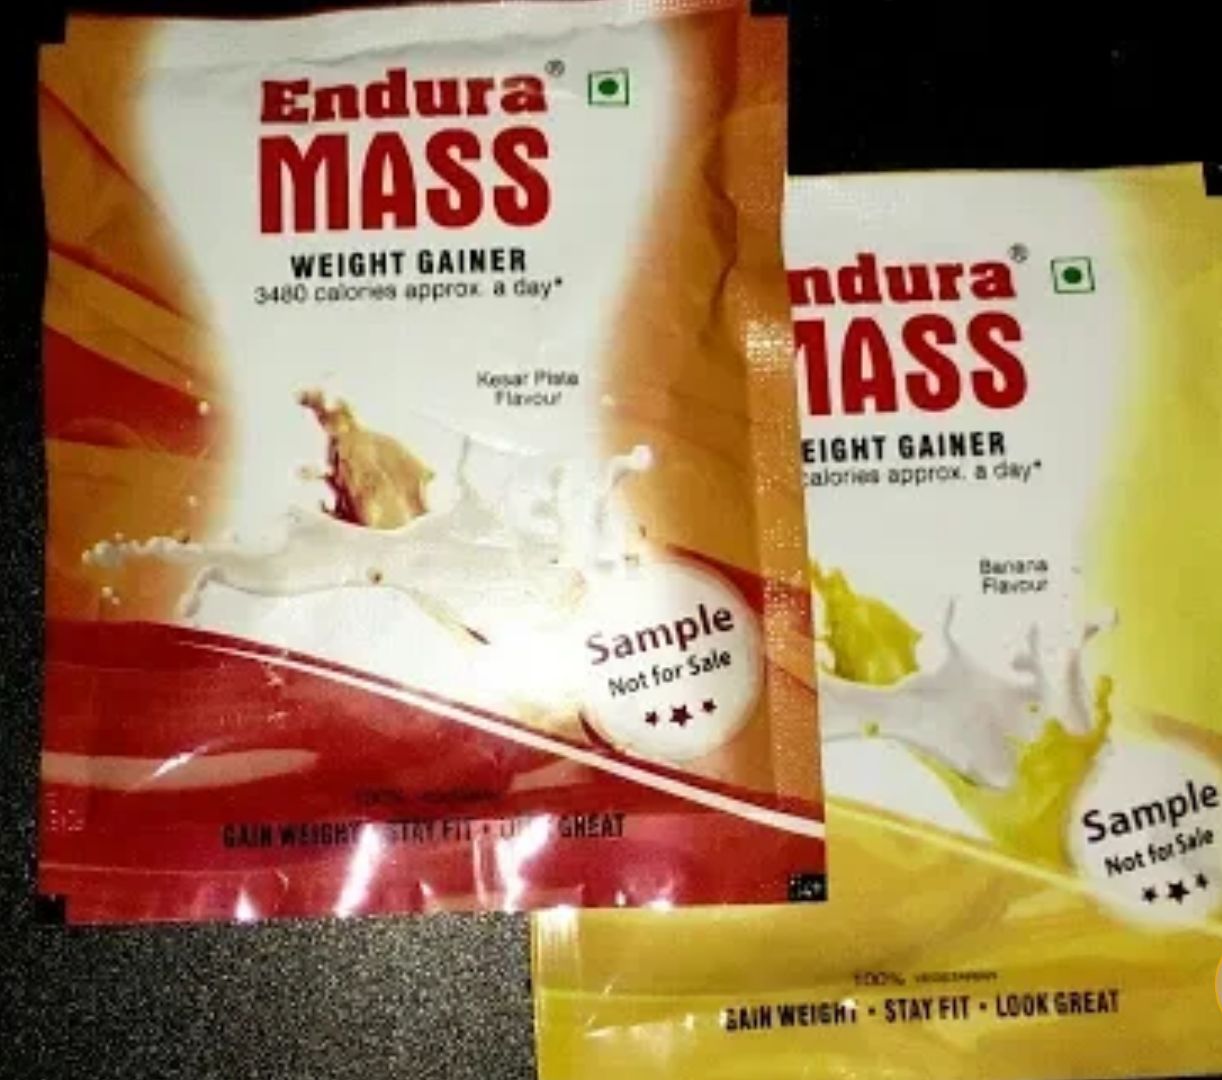 Endura Mass Weight Gainer Free Sample